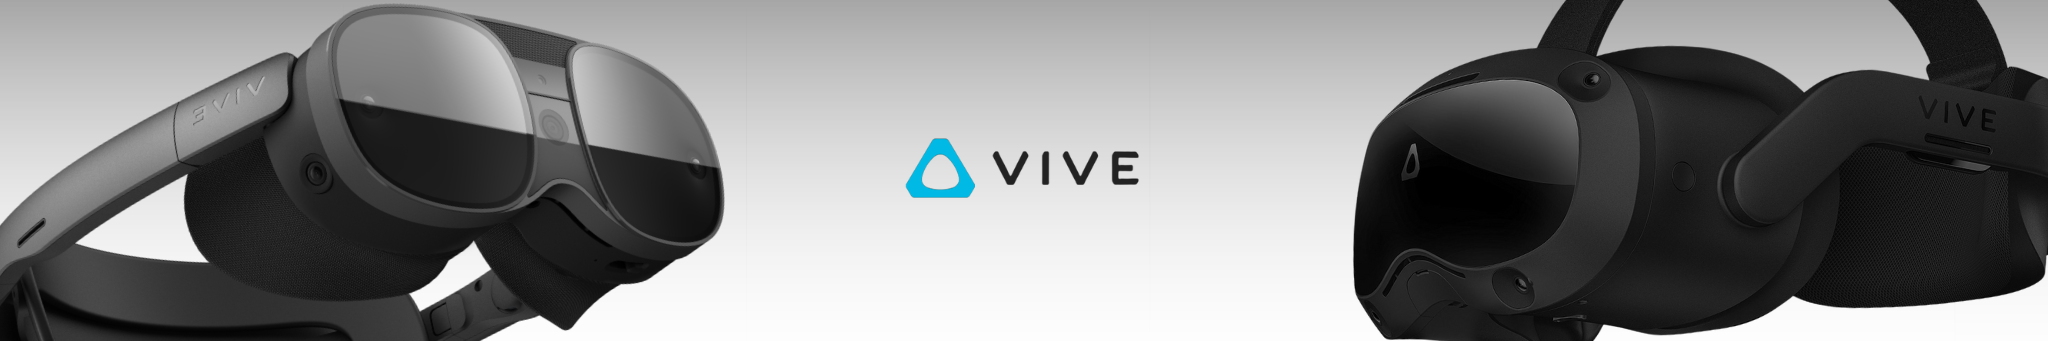 Bannière HTC VIVE - Matts digital